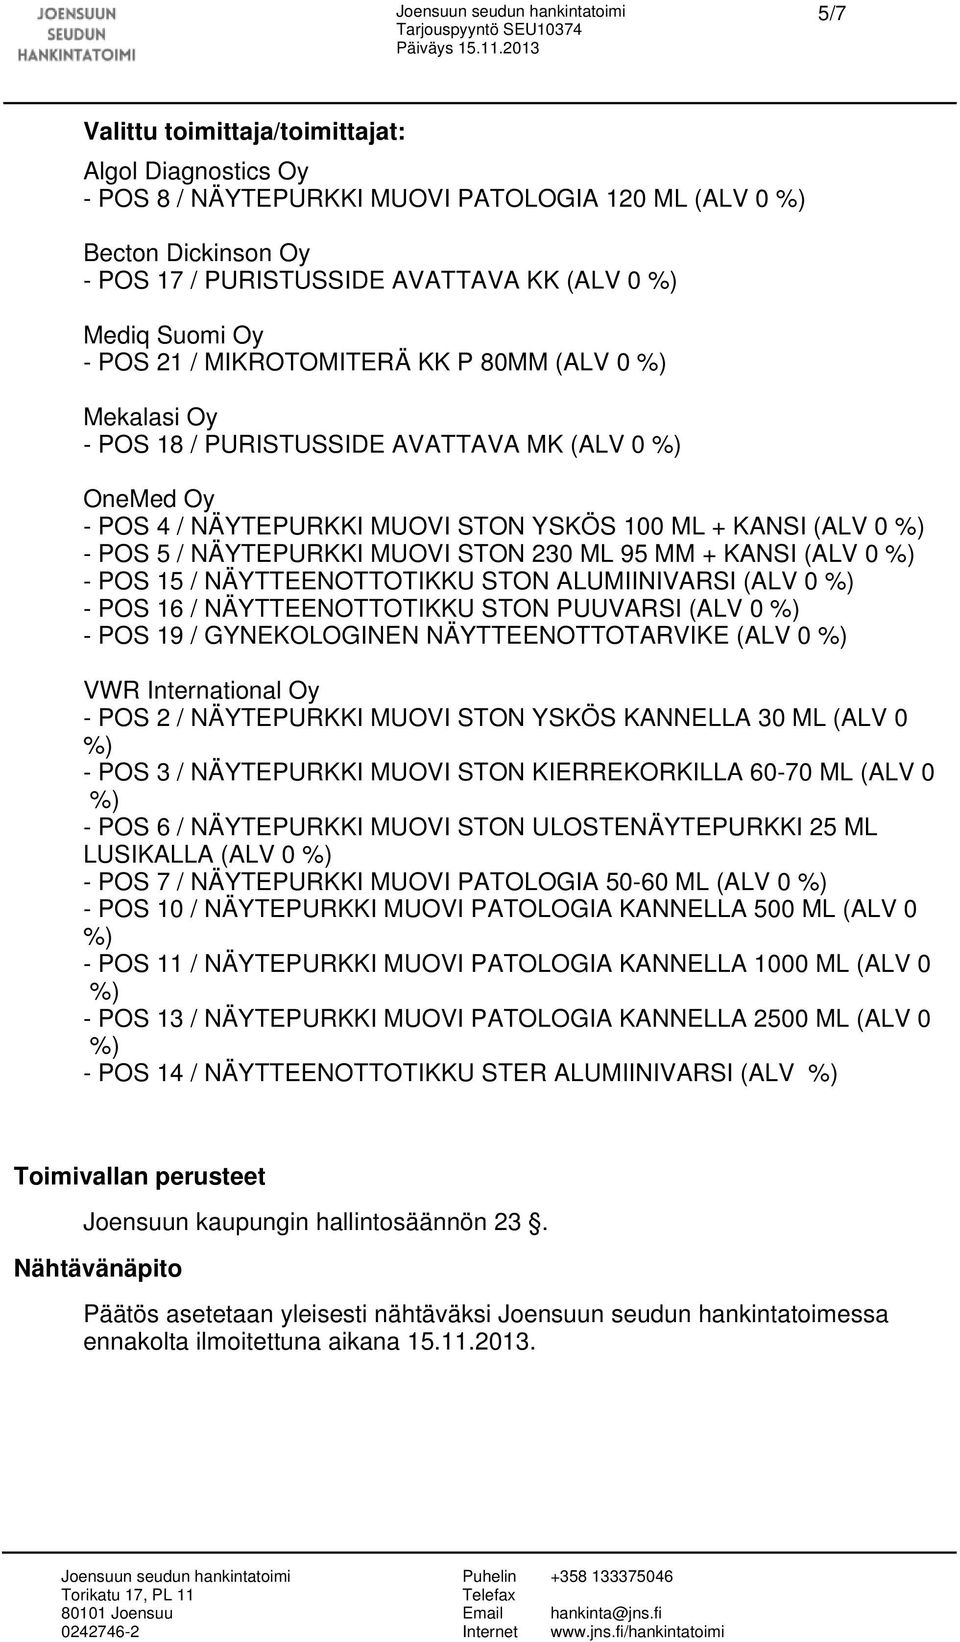 MM + KANSI (ALV 0 - POS 15 / NÄYTTEENOTTOTIKKU STON ALUMIINIVARSI (ALV 0 - POS 16 / NÄYTTEENOTTOTIKKU STON PUUVARSI (ALV 0 - POS 19 / GYNEKOLOGINEN NÄYTTEENOTTOTARVIKE (ALV 0 VWR International Oy -